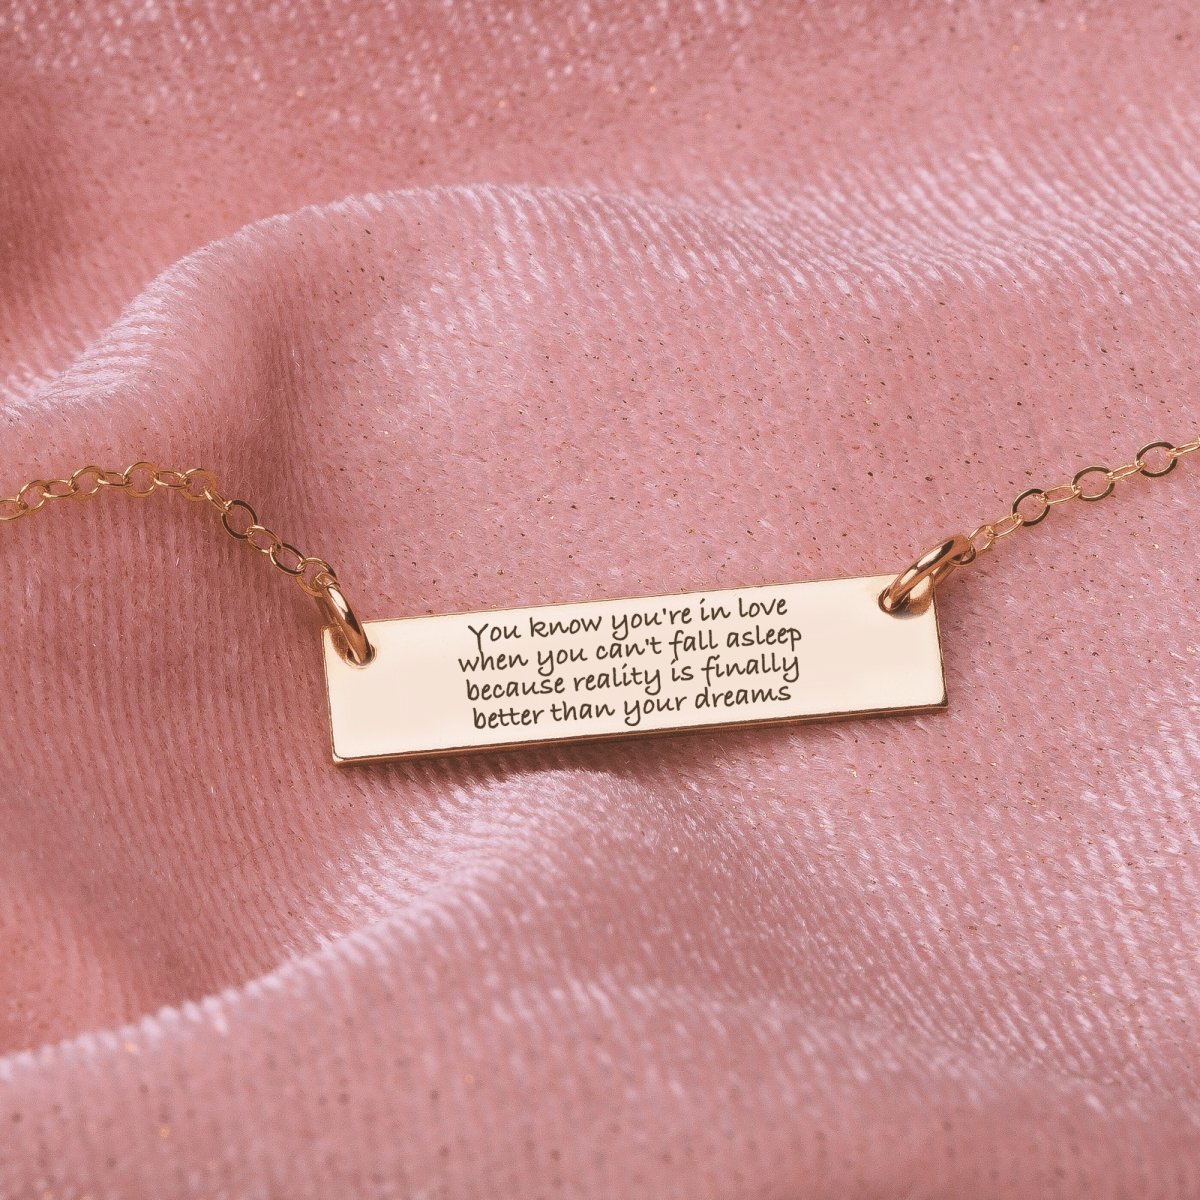 Dream Of Love Simple Fashion Silver Pendant Necklace V Letter Necklace -  Buy V Letter Necklace,V Letter Necklace,V Letter Necklace Product on